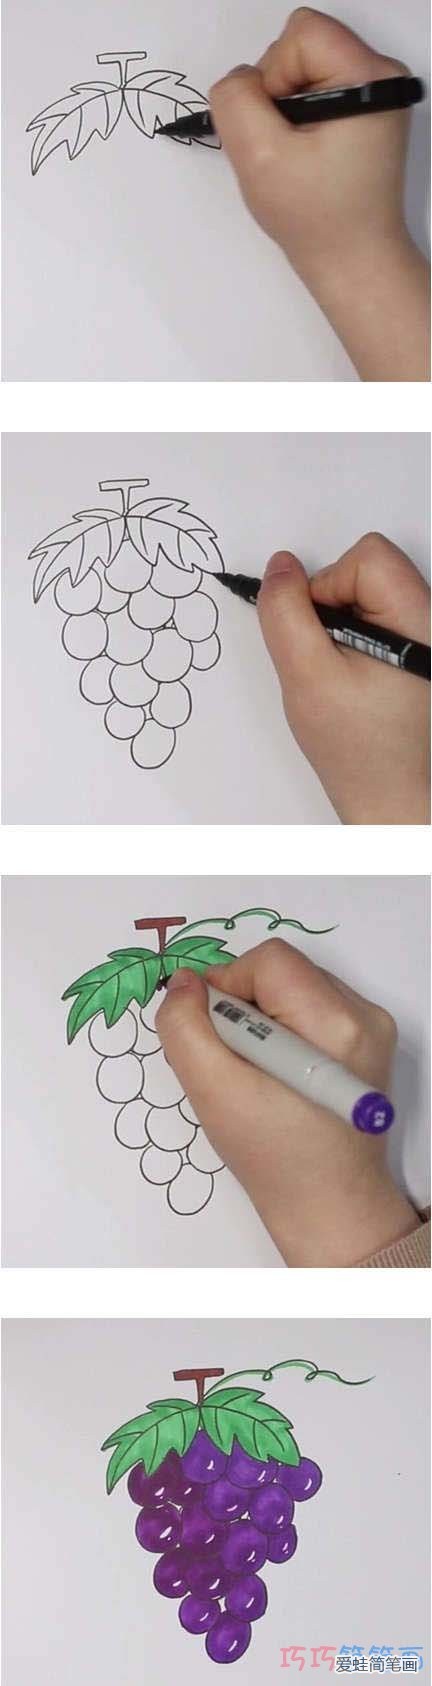 教你怎么画葡萄简笔画